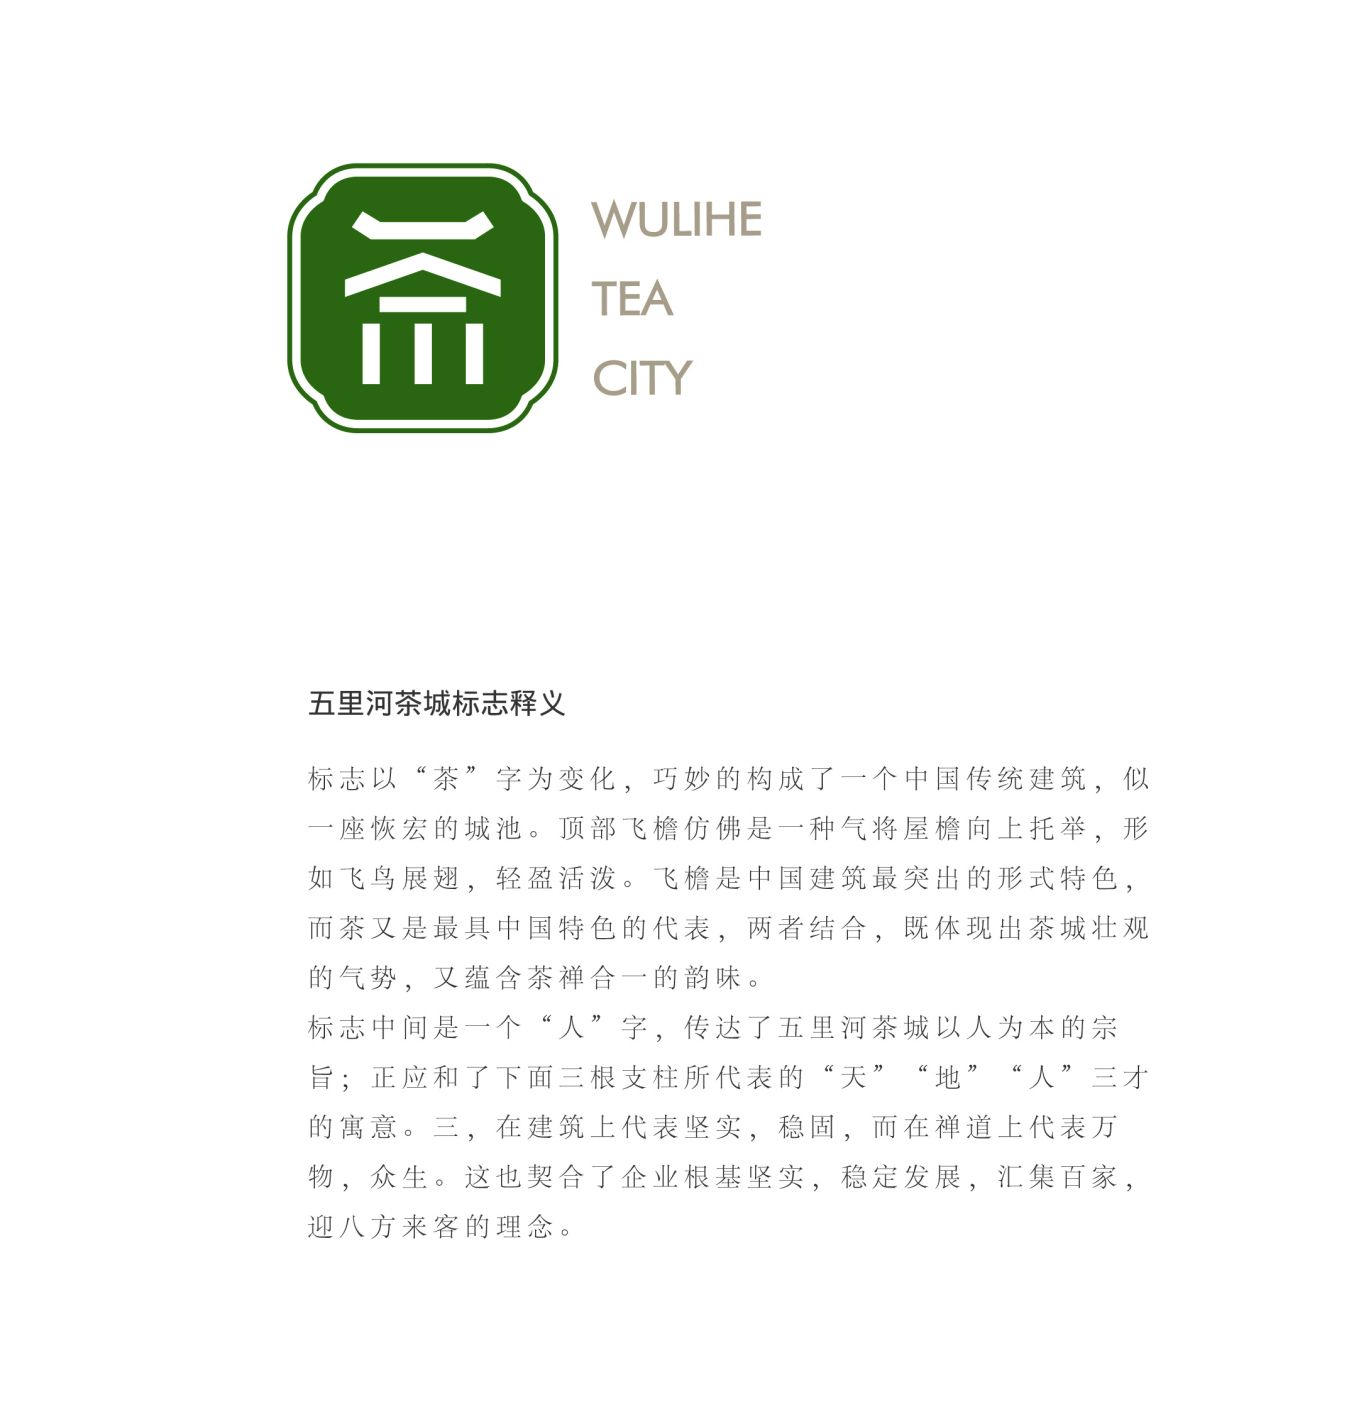 沈阳五里河茶城 品牌VI形象设计图2